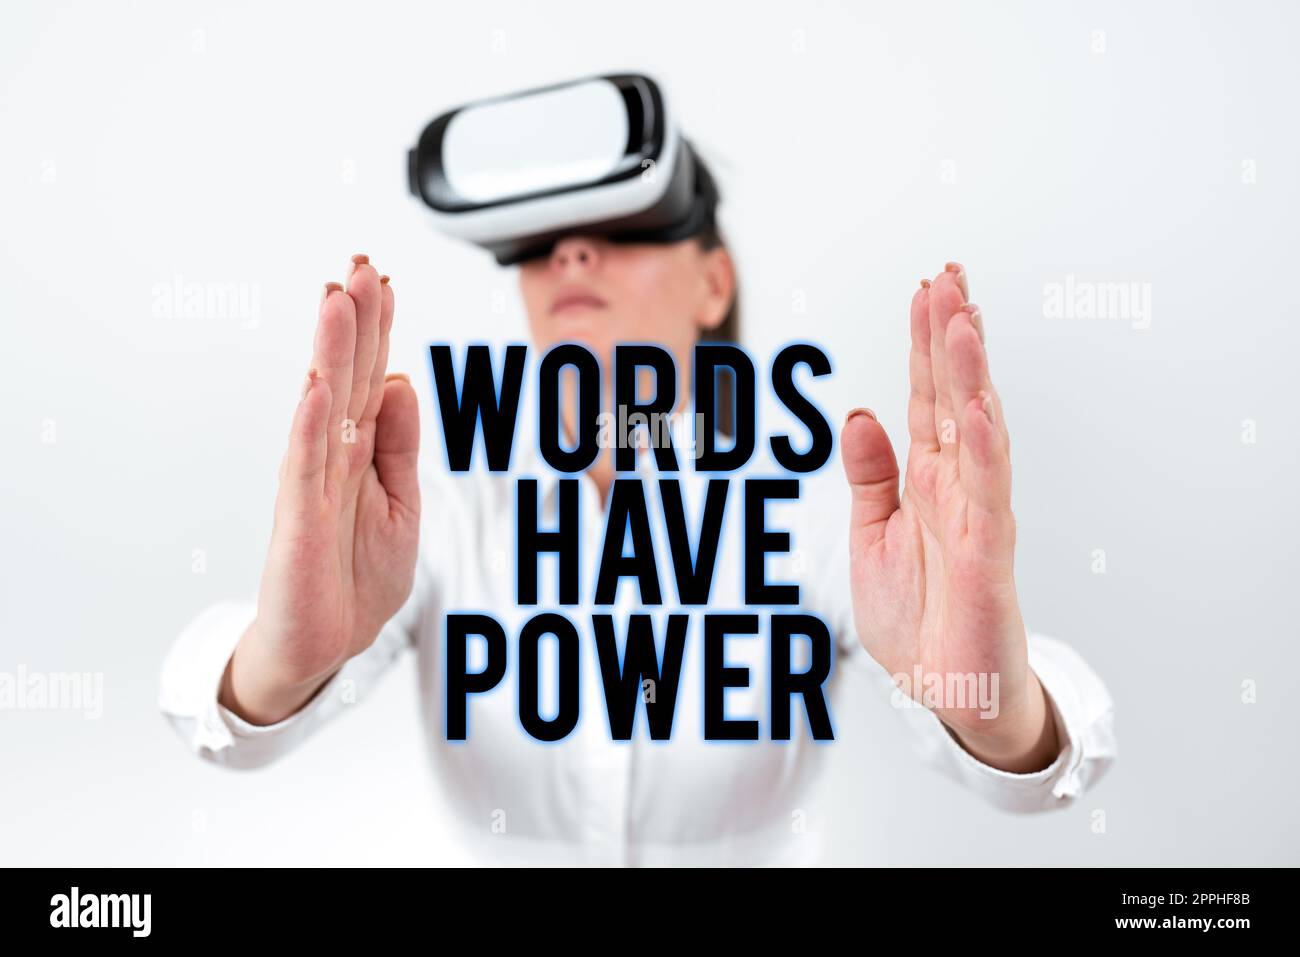 Handschriftliche Wörter haben Macht. Geschäftsidee grundlegende Werkzeuge, die Einzelpersonen nutzen, um zu kommunizieren und zu lernen Stockfoto